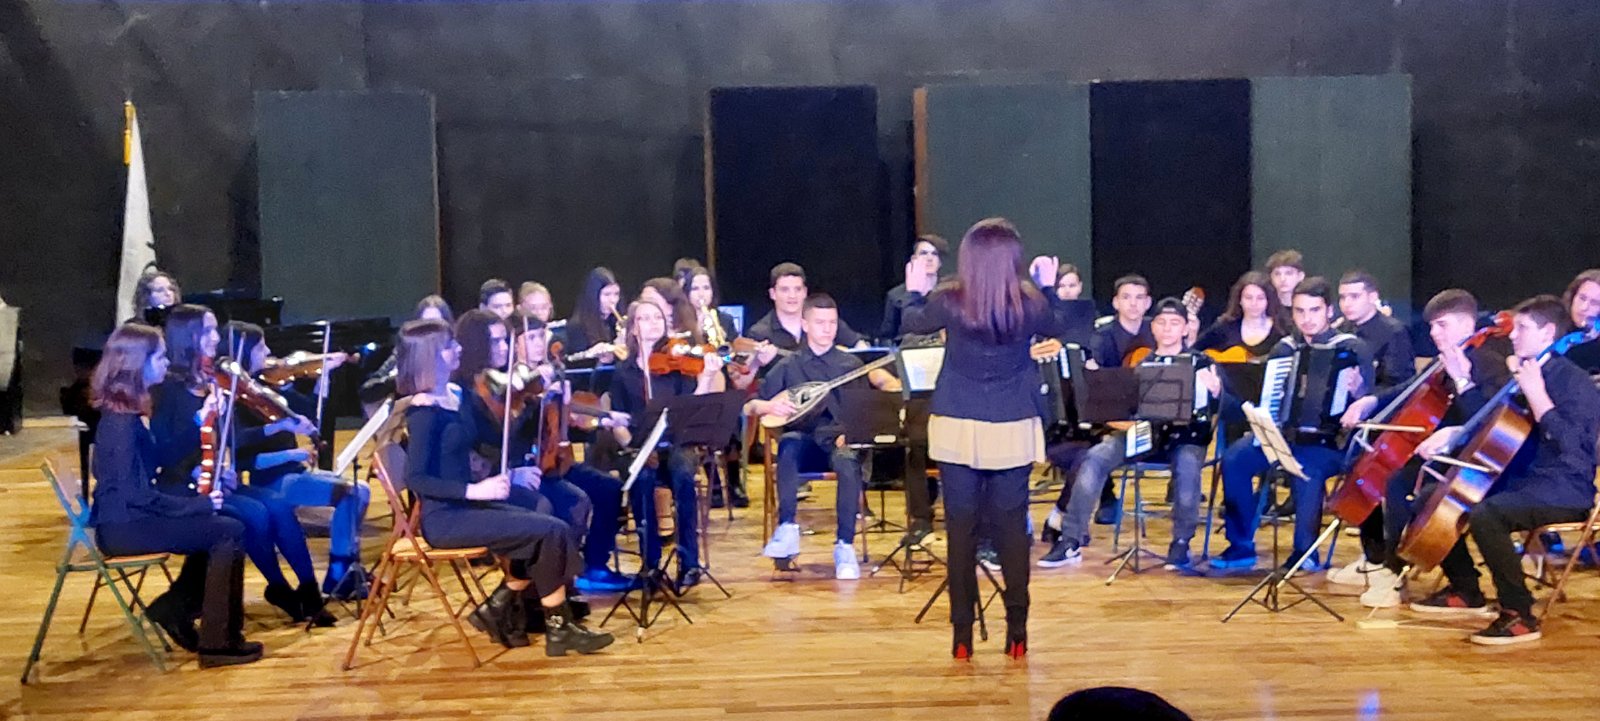 Μουσικό Σχολείο Σιάτιστας Επετειακή εκδήλωση για την 25η Μαρτίου